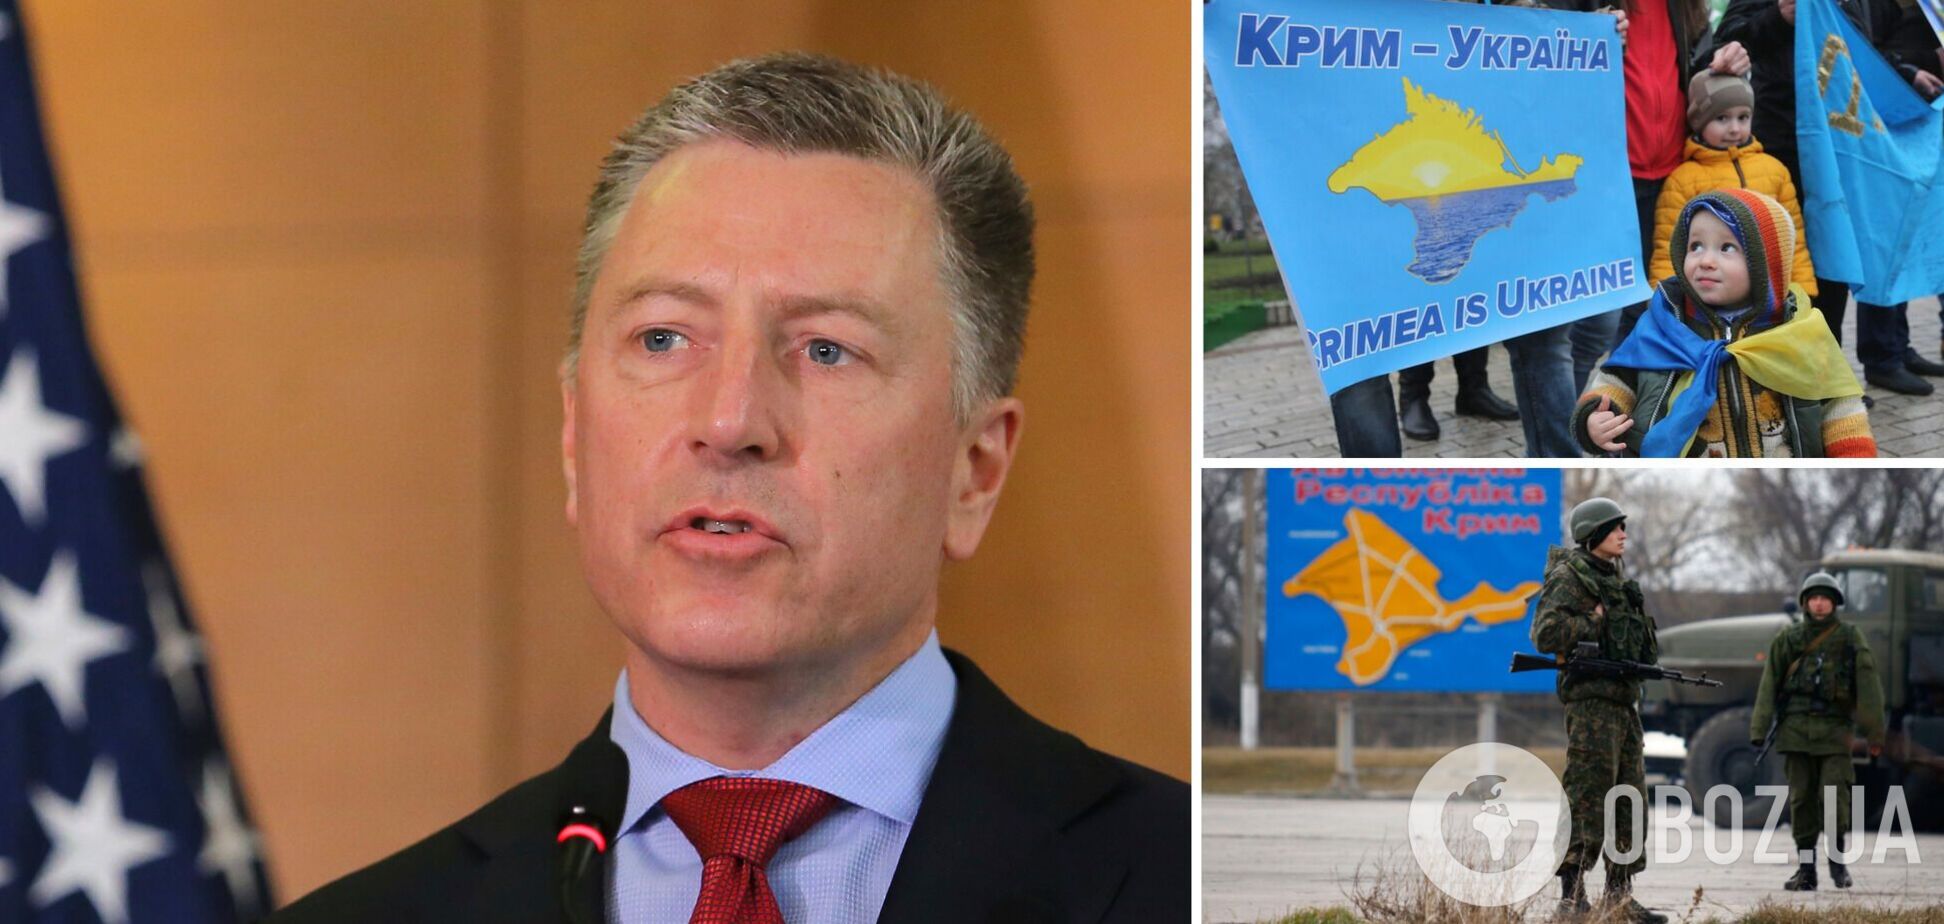 ВСУ могут уже сейчас начинать операцию по освобождению Крыма, чтобы изолировать его от РФ, – Курт Волкер